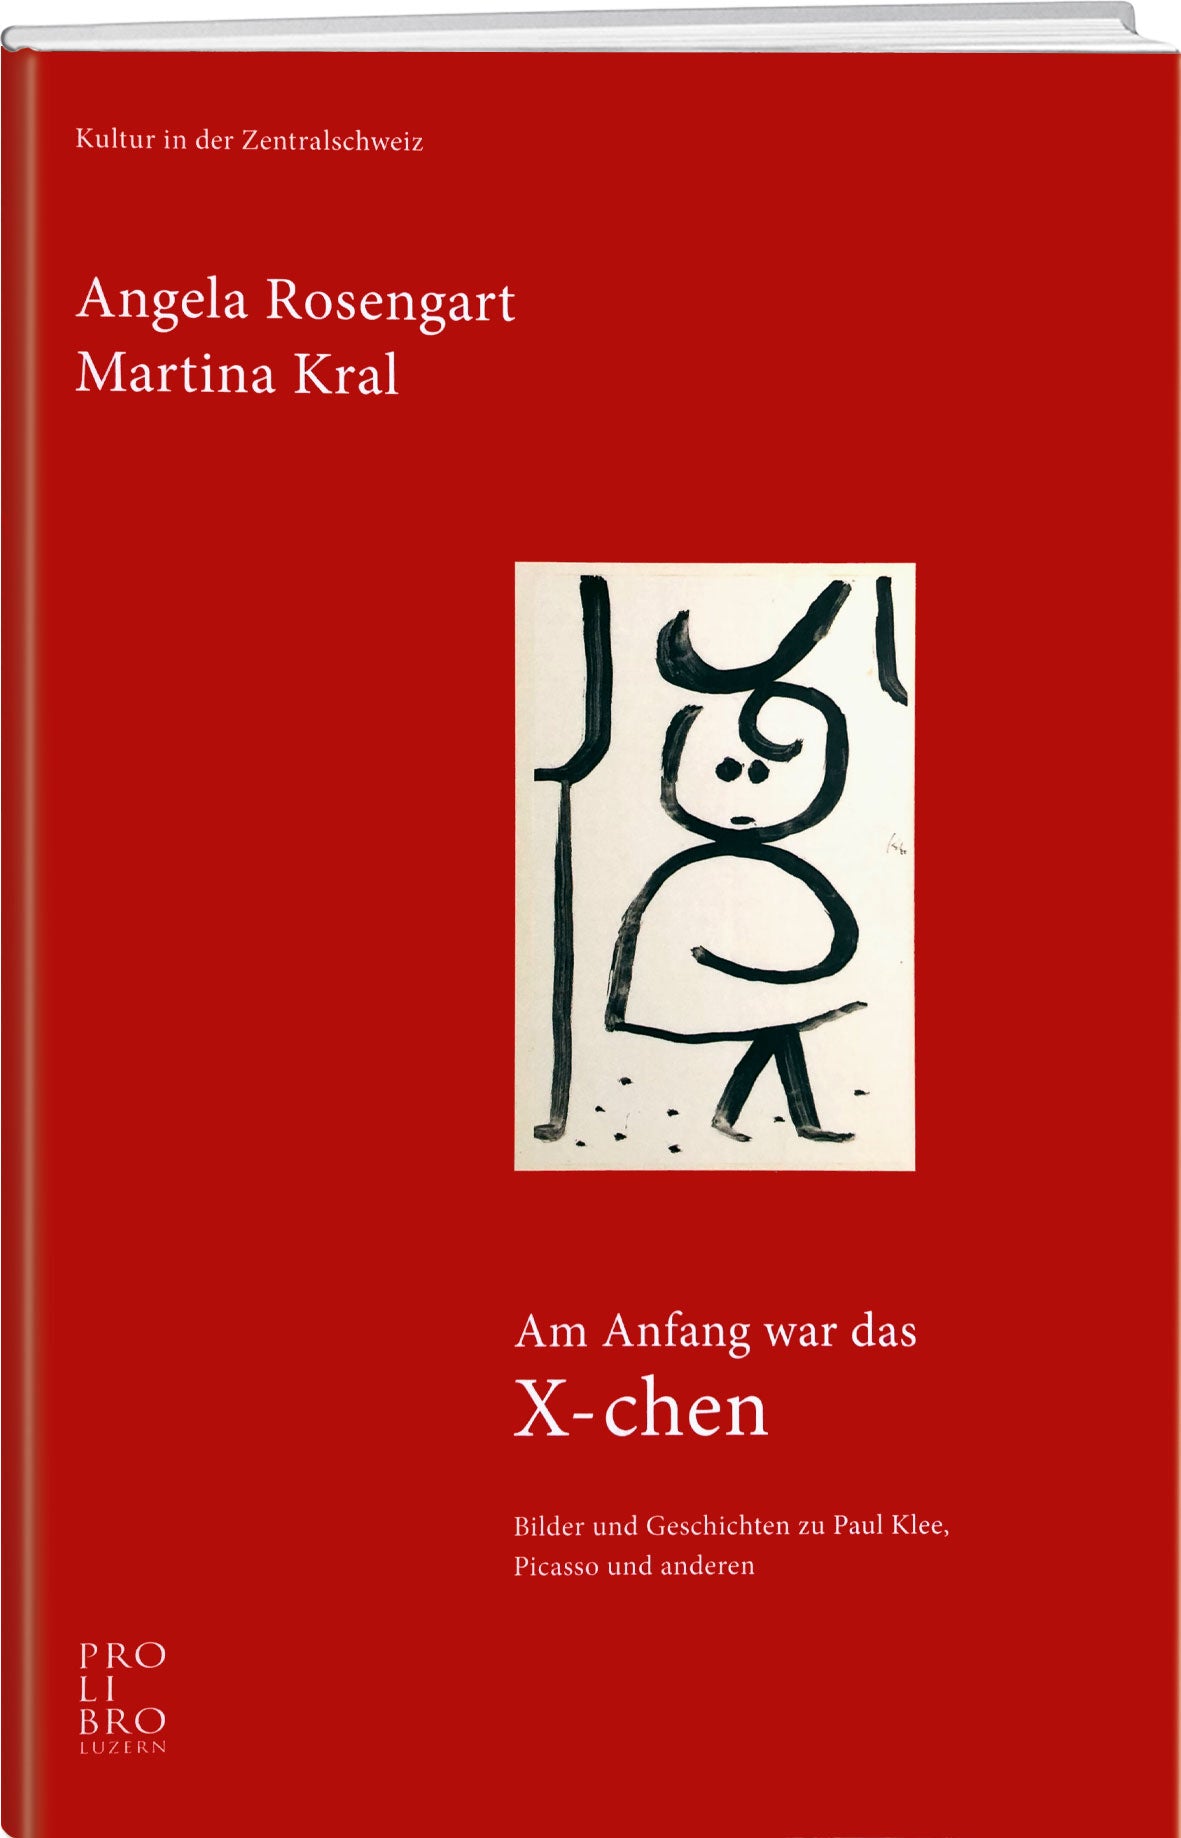 Rosengart Angela/Kral Martina: Am Anfang war das X-chen - prolibro.ch